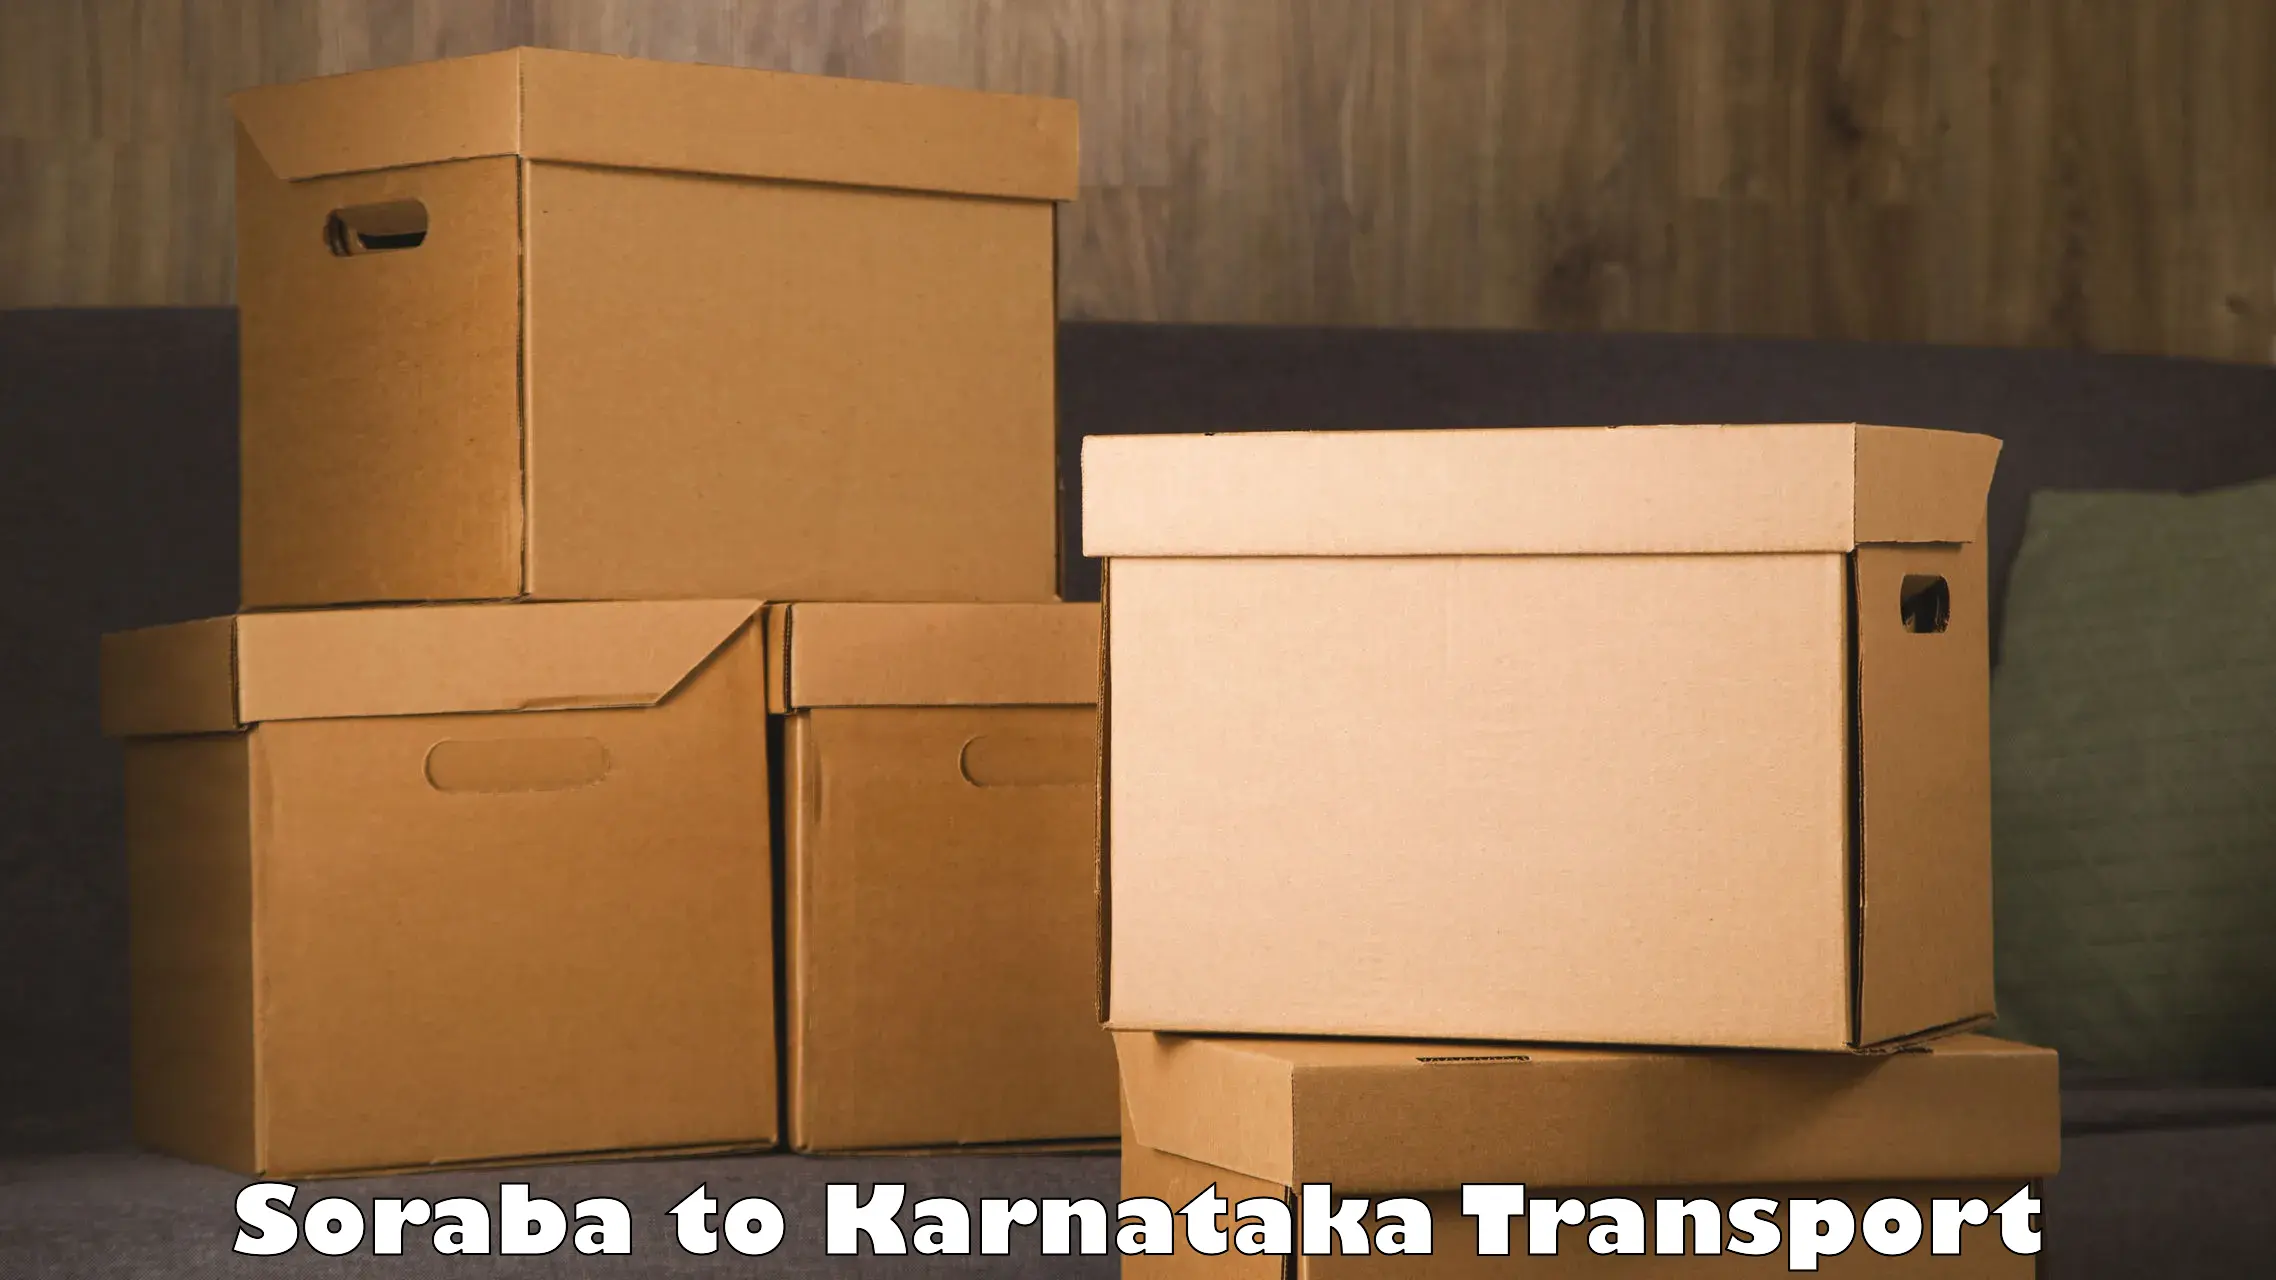 Commercial transport service Soraba to Channarayapatna